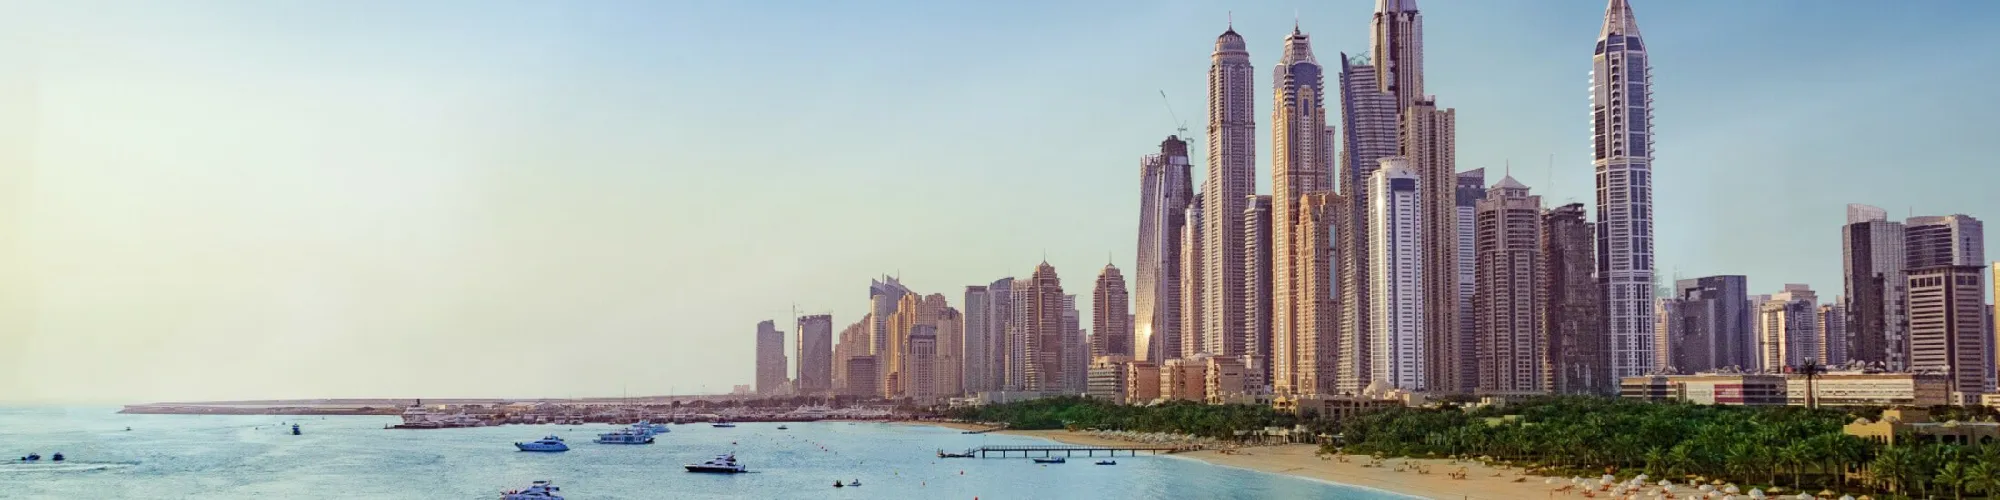 Traumreise nach Dubai background image